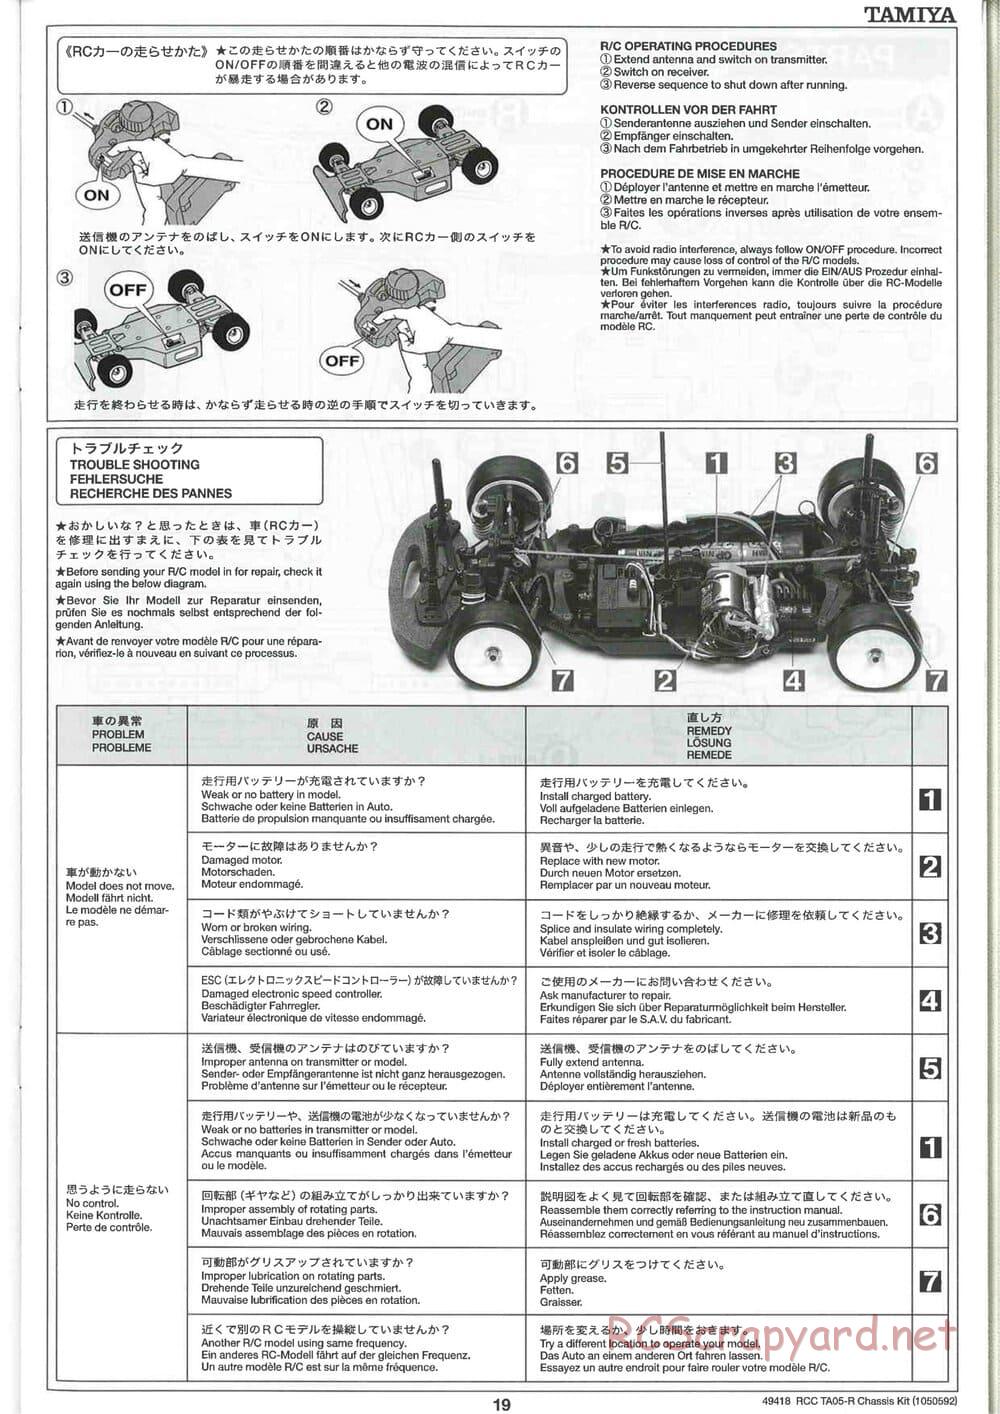 Tamiya - TA05-R Chassis - Manual - Page 19